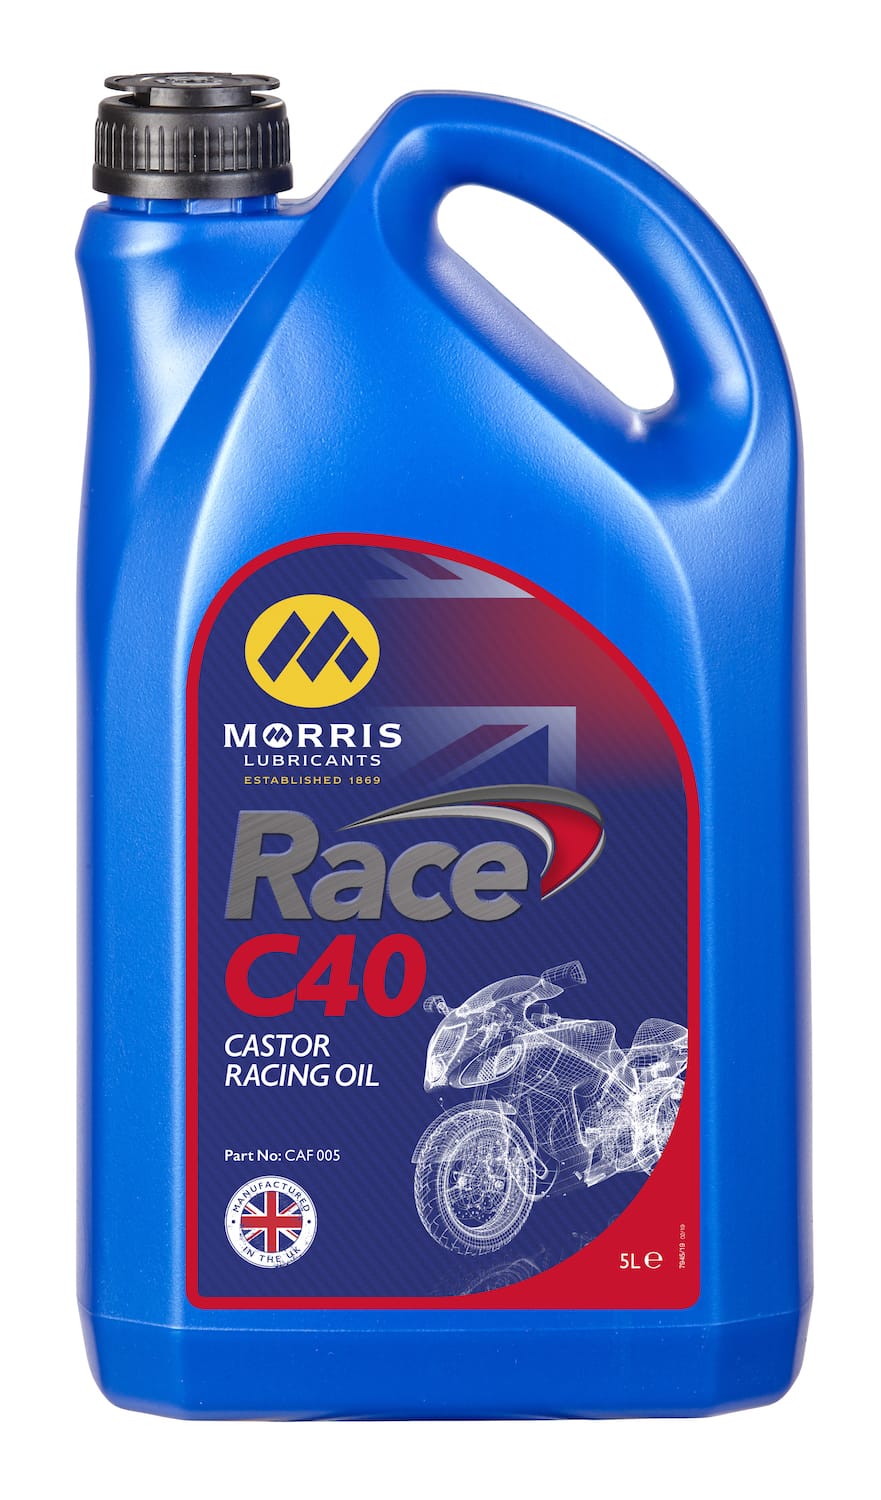 Morris Race C40 (Castor Based Oil) 5L